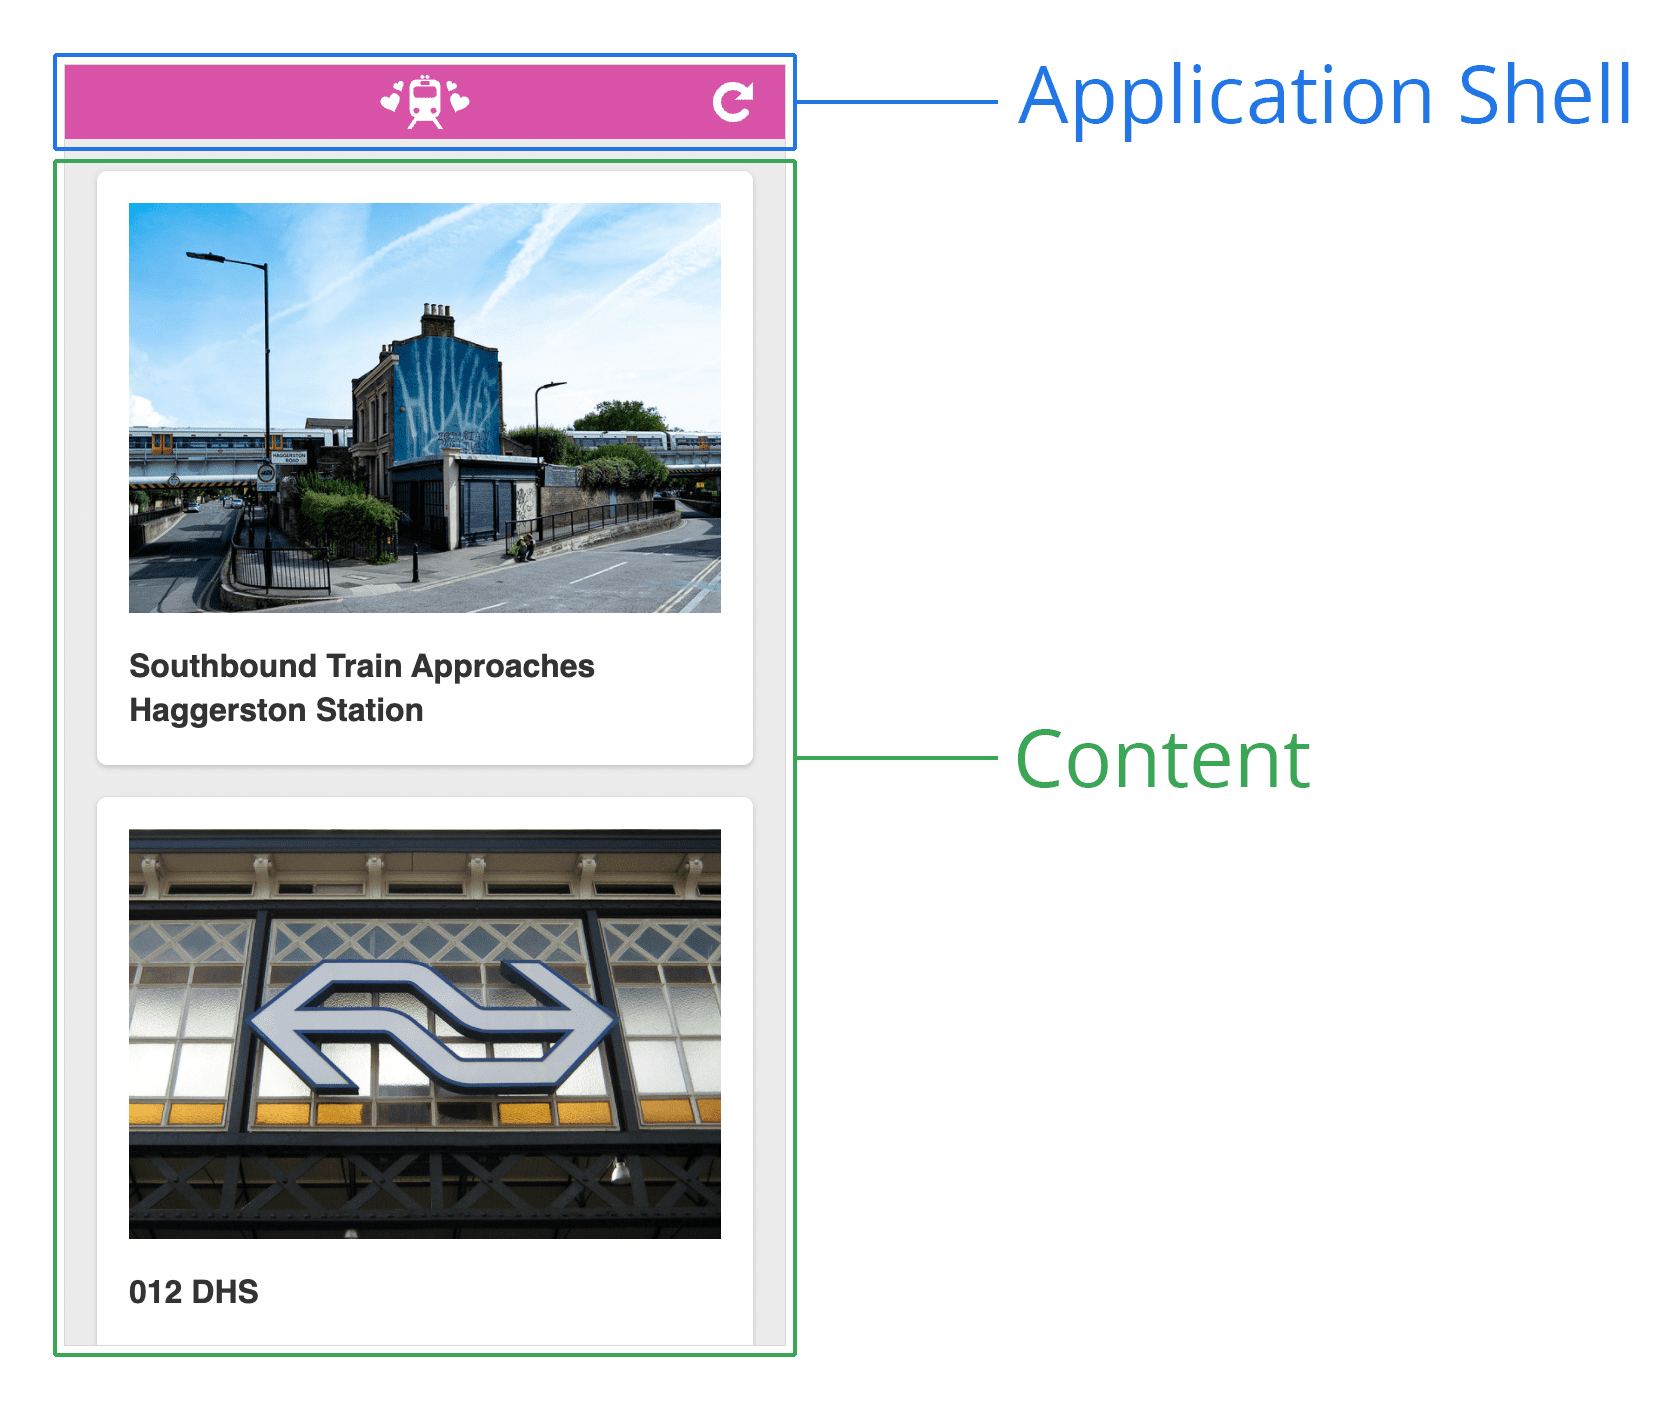 アプリケーション シェルの図。上部にヘッダー、下部にコンテンツ領域があるウェブページのスクリーンショットです。ヘッダーには「アプリケーション シェル」、下部には「コンテンツ」というラベルが付いています。